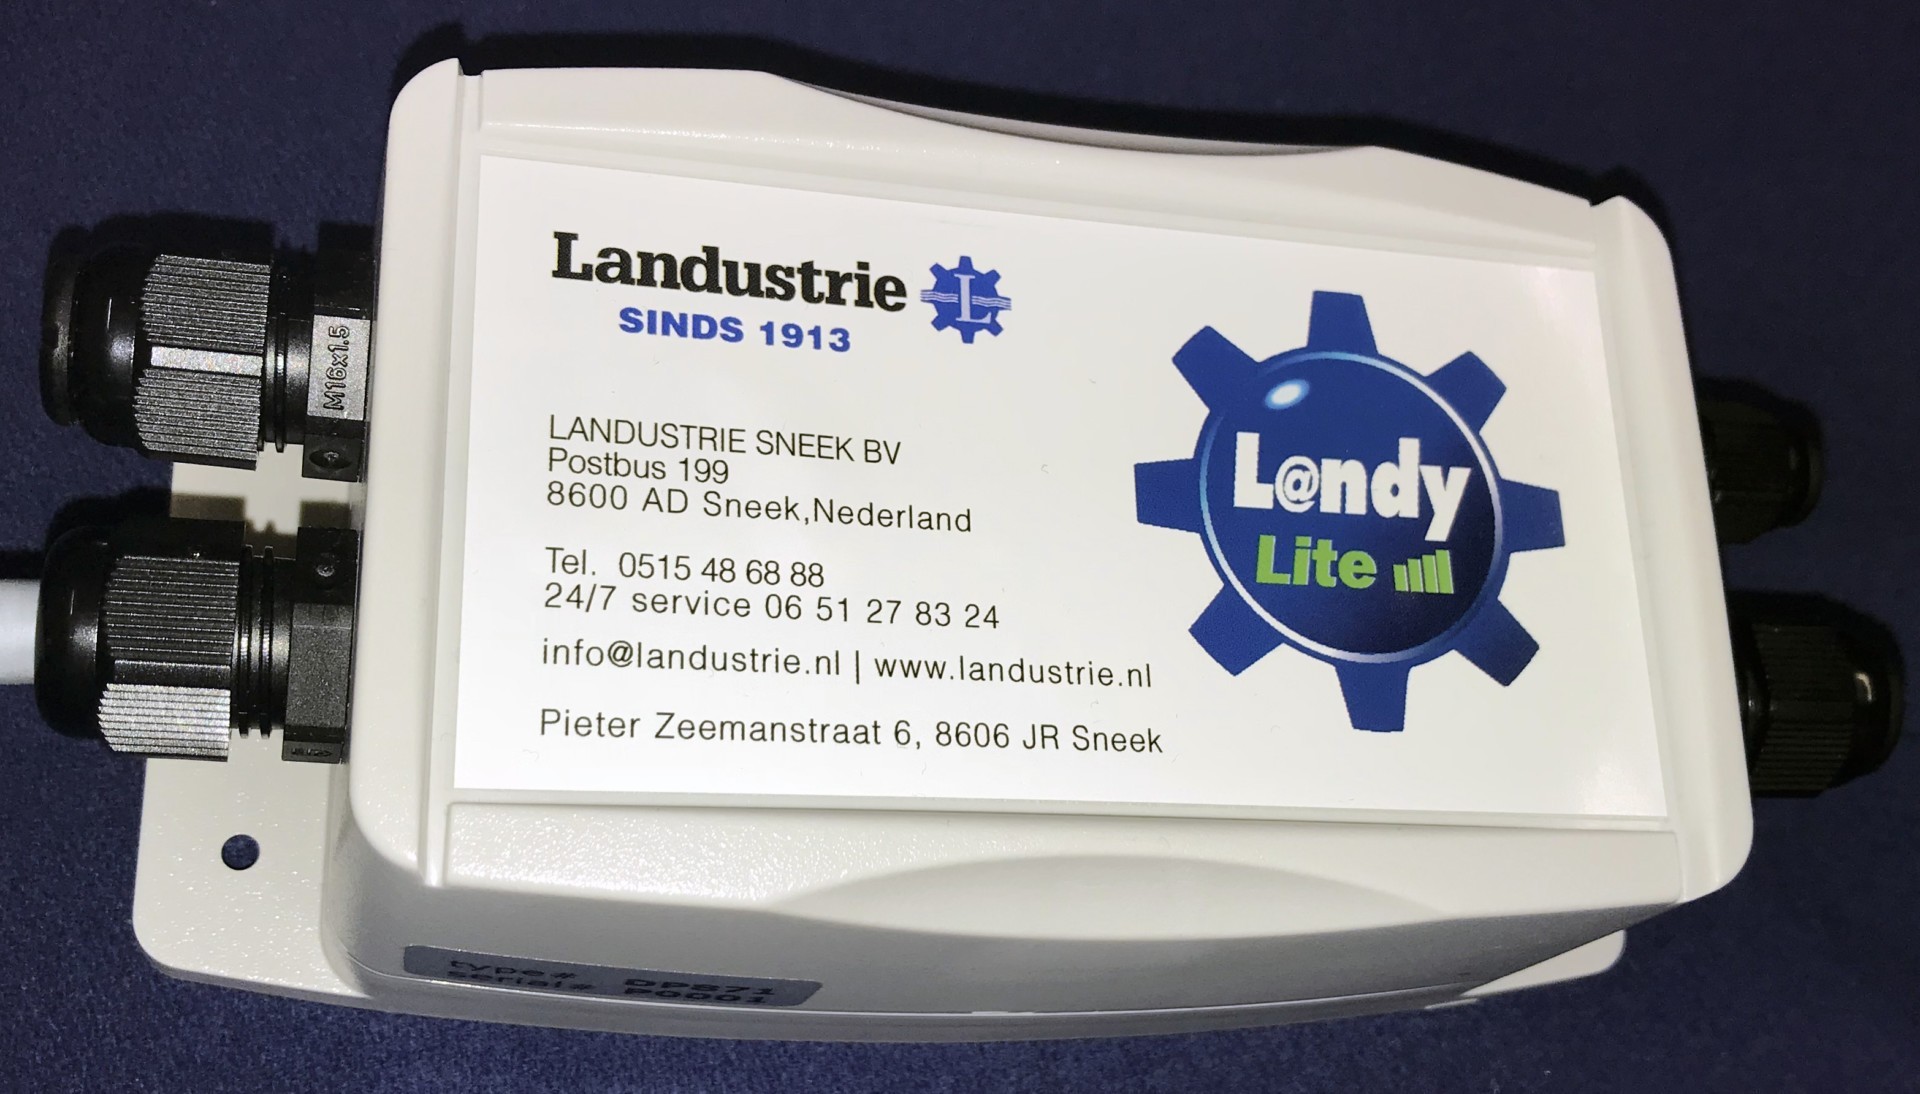 LandyLite